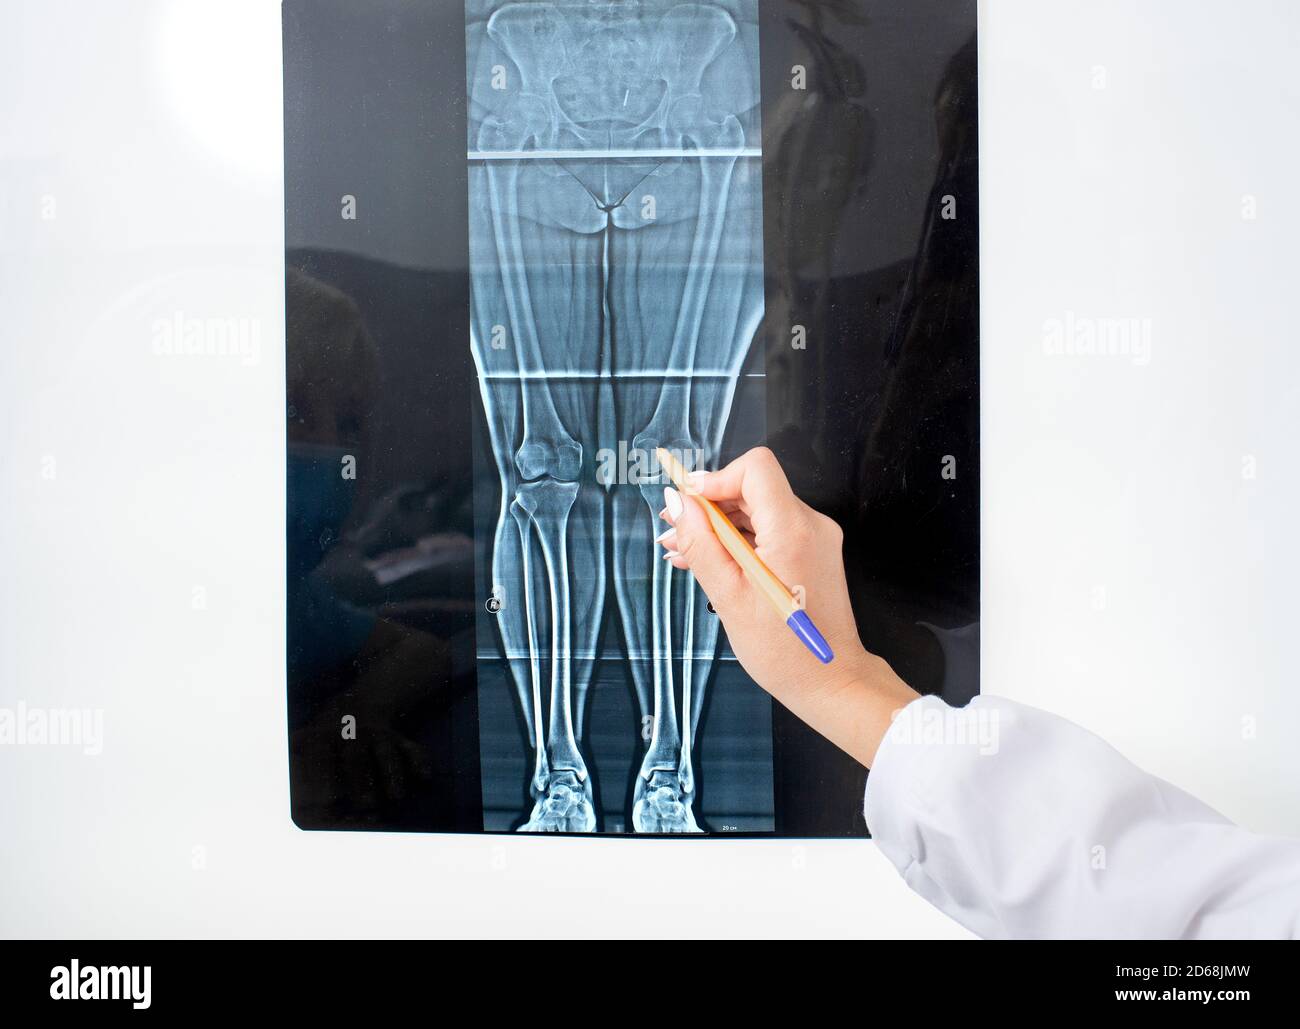 Röntgen des Kniegelenks auf einem Negatoskop, Röntgen als eine Art der Diagnose für die Behandlung von Krankheiten und Verletzungen der Gelenke der Beine Stockfoto